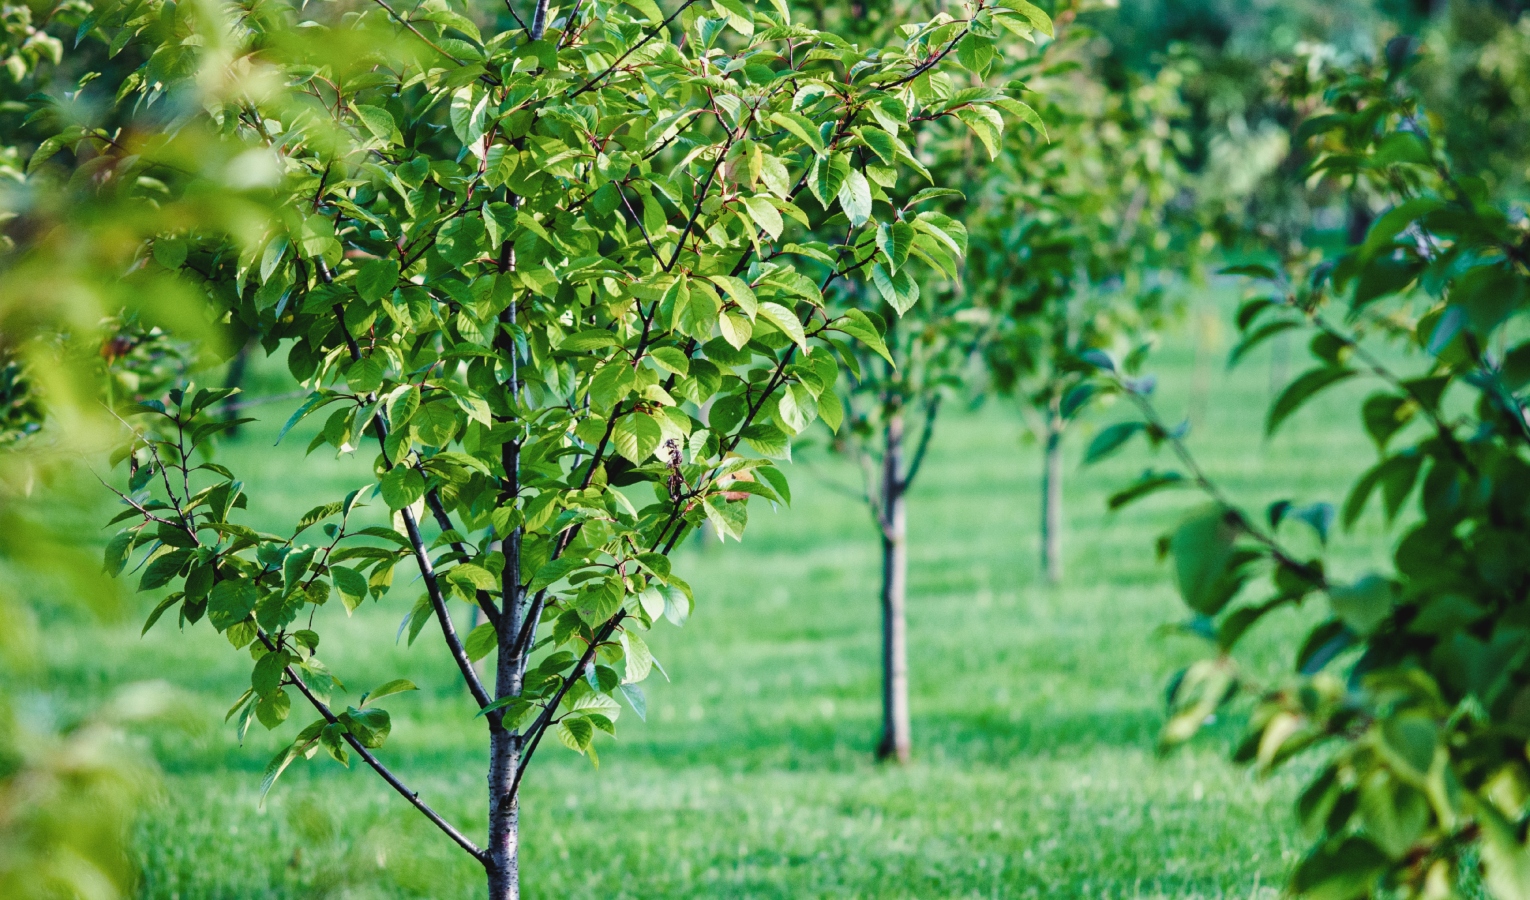 Università popolare - Qual è il periodo migliore per piantare alberi da frutto?